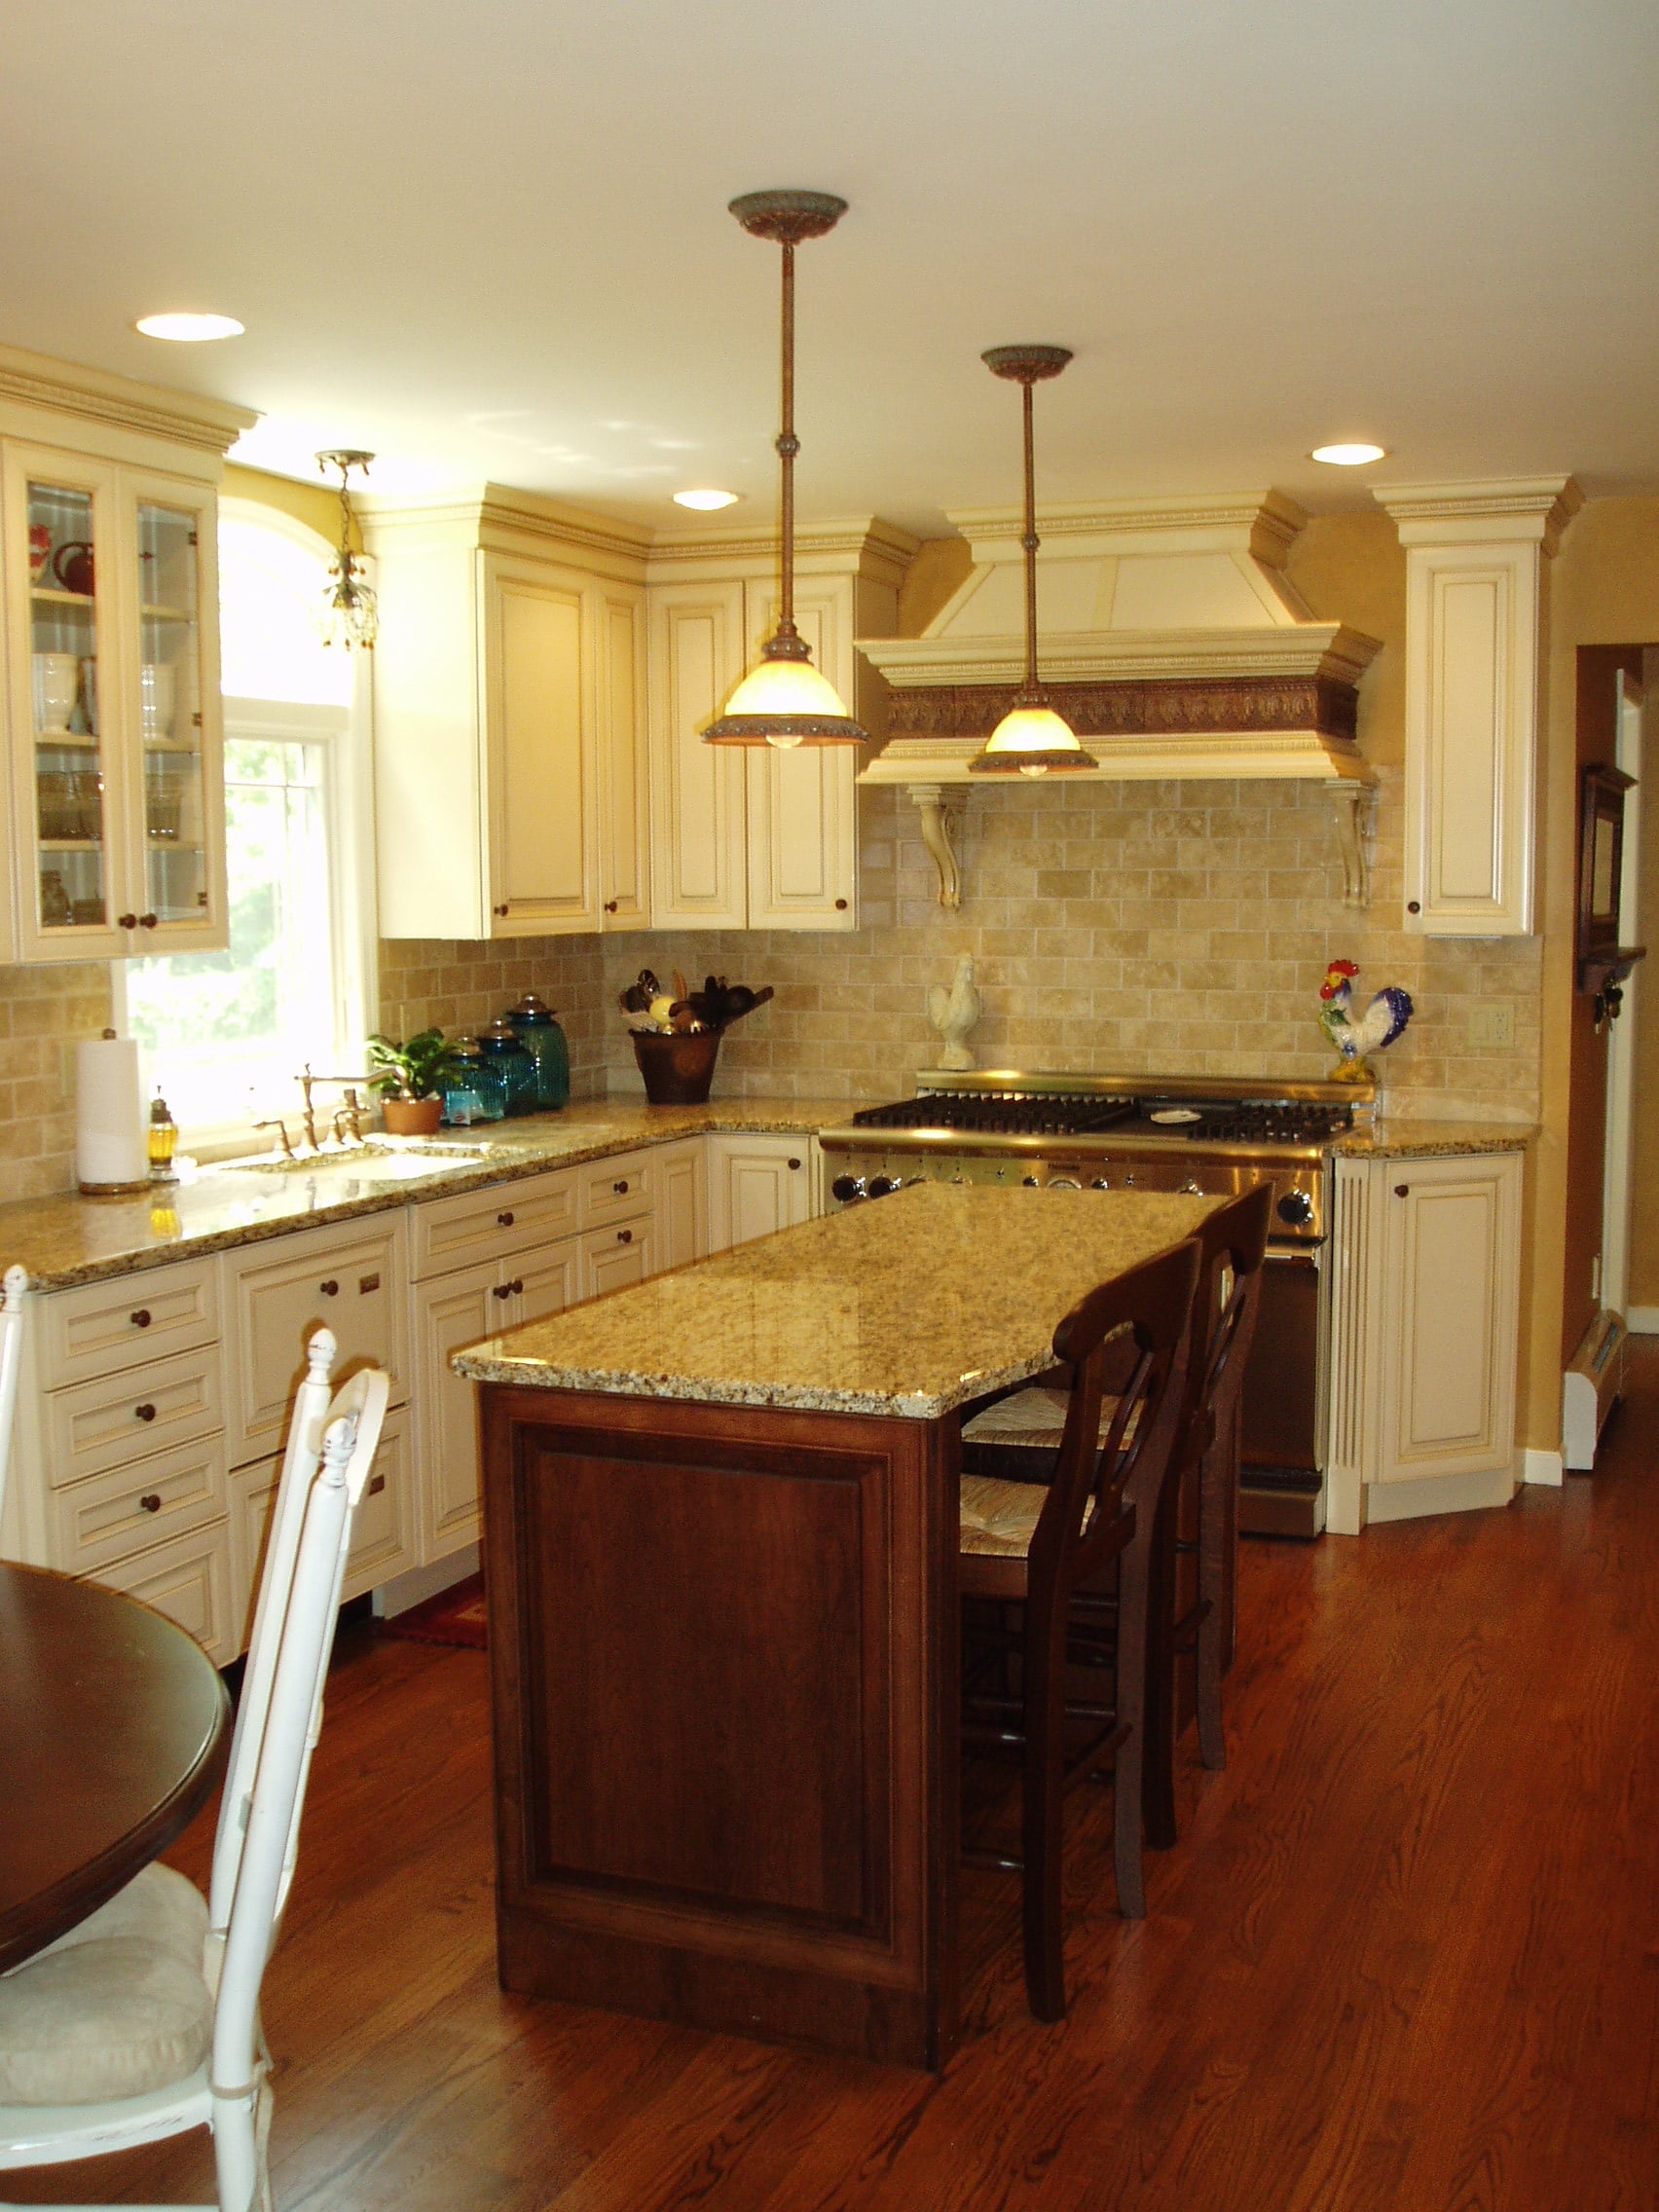 Home Remodeling Services | Hans' Kitchens & Baths | Oakland NJ